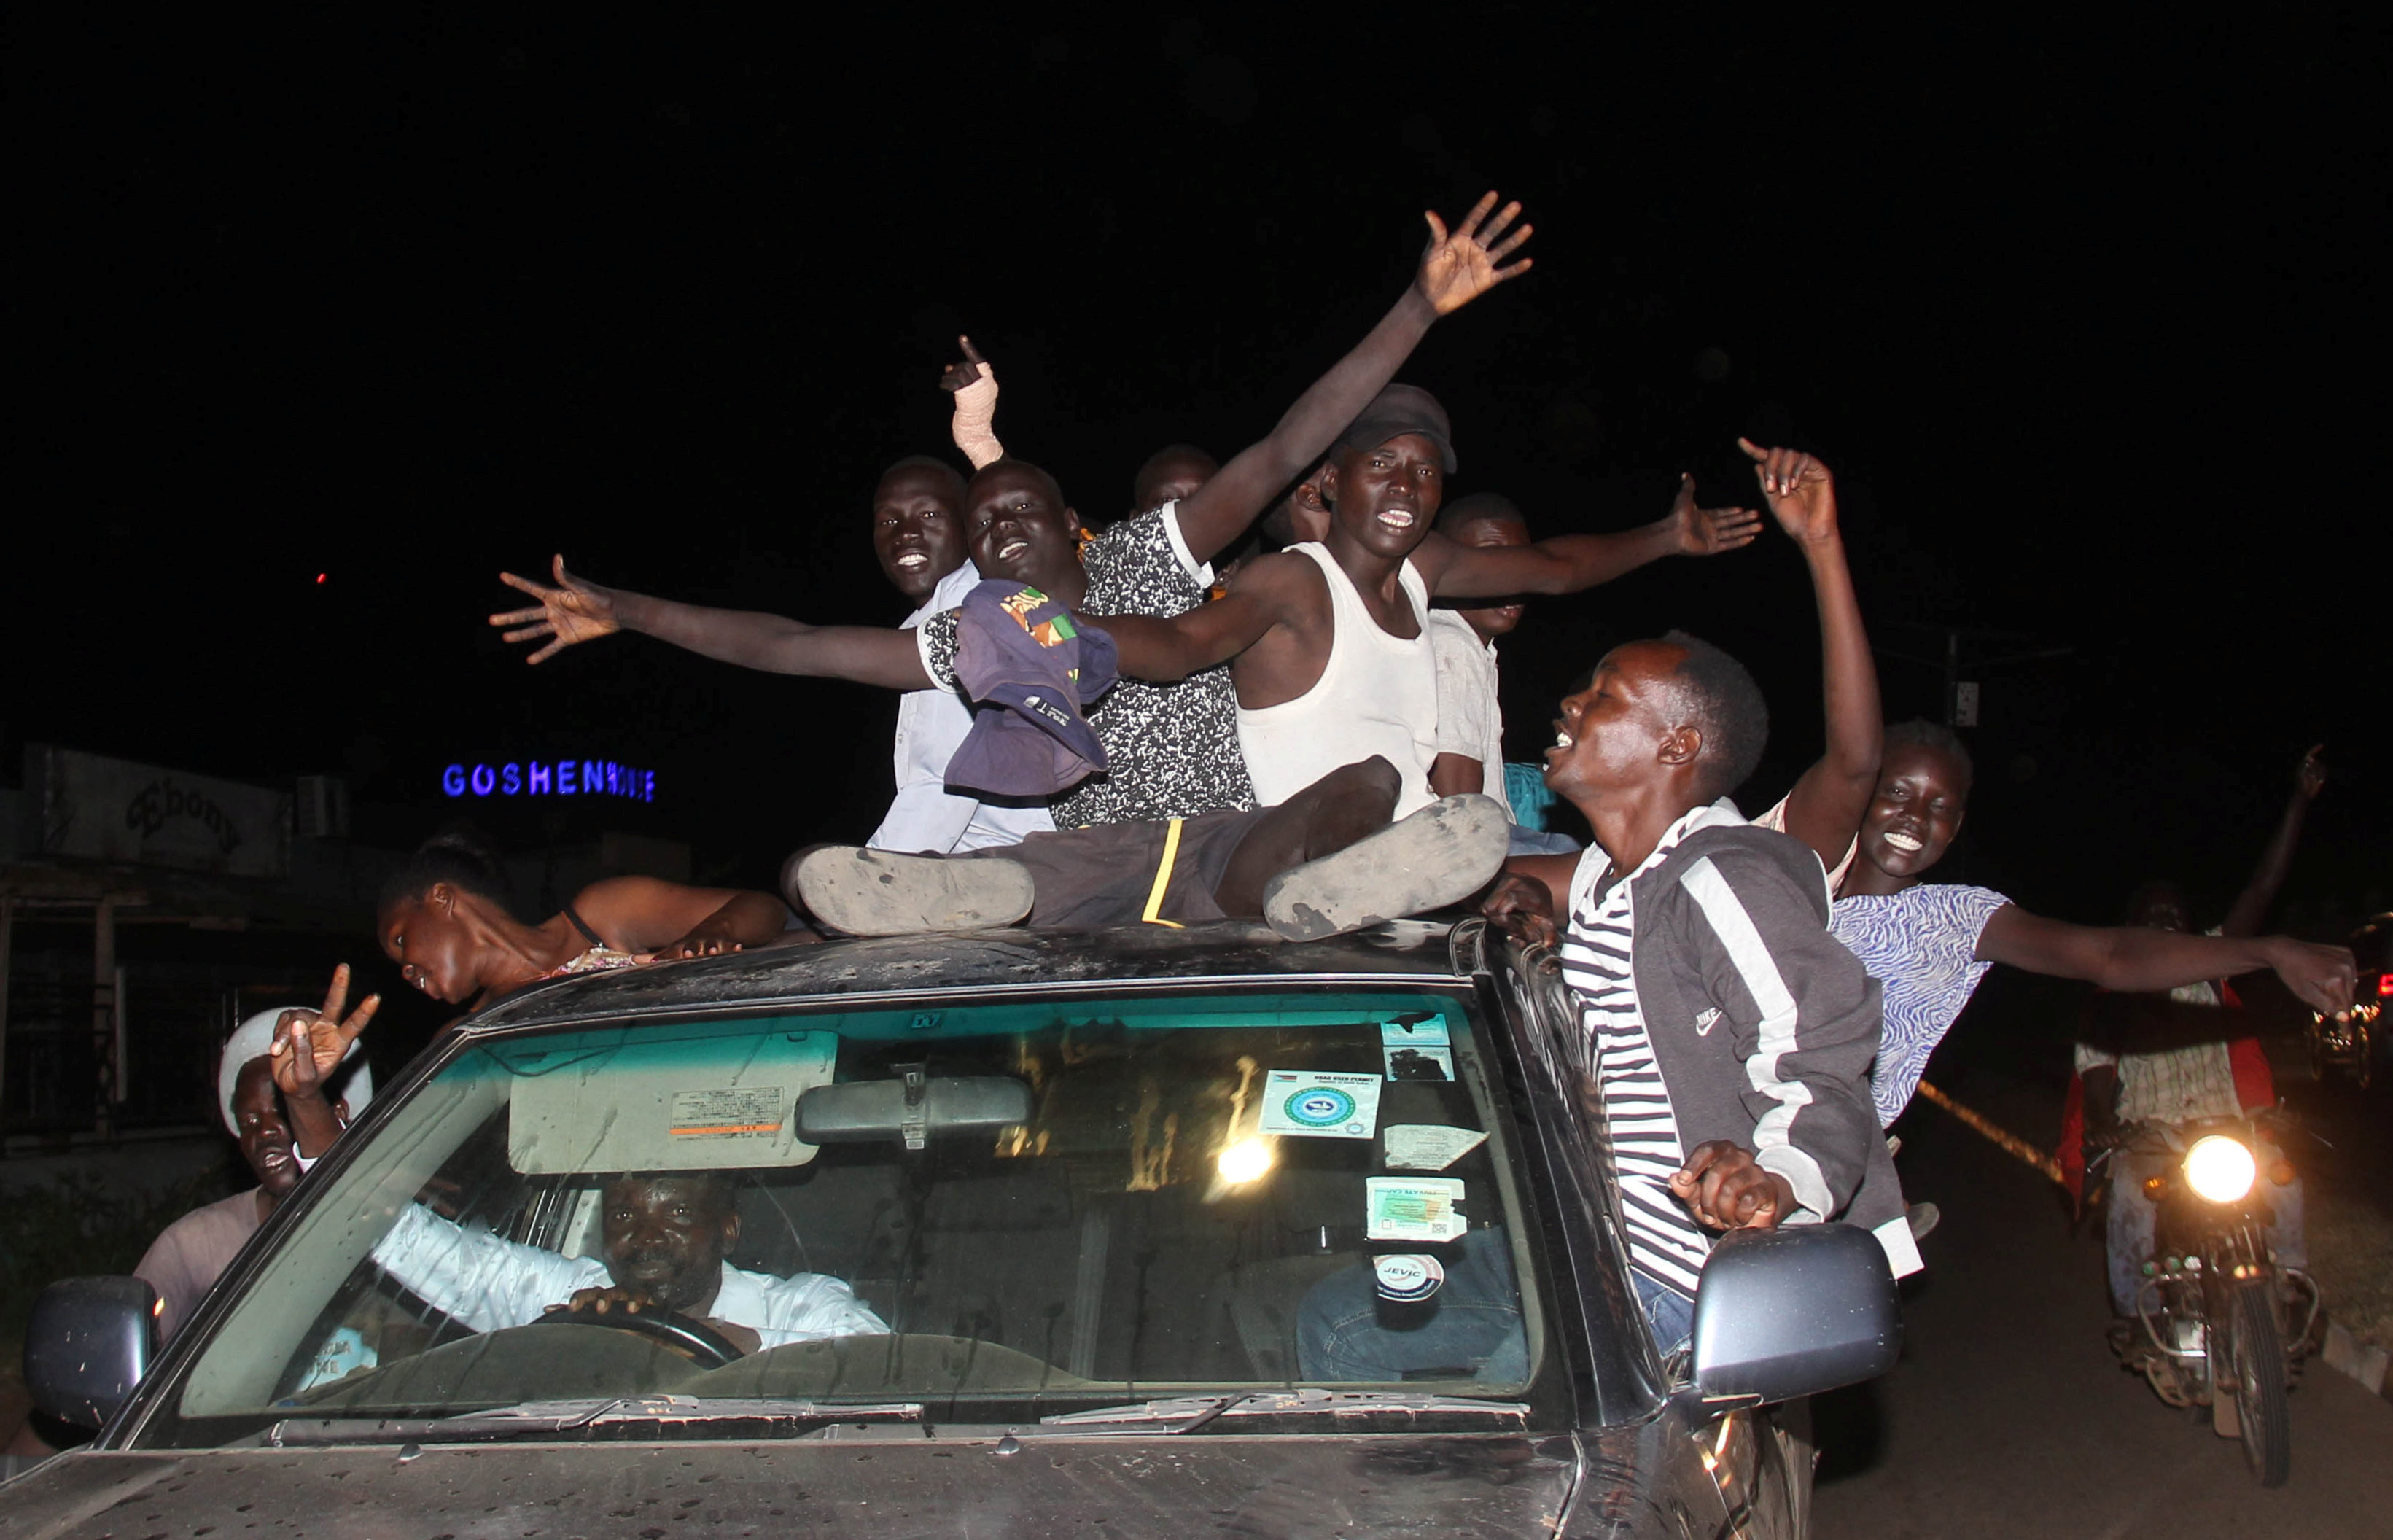 احتفالات بين مواطنى جنوب السودان  بعد توقيع اتفاق السلام